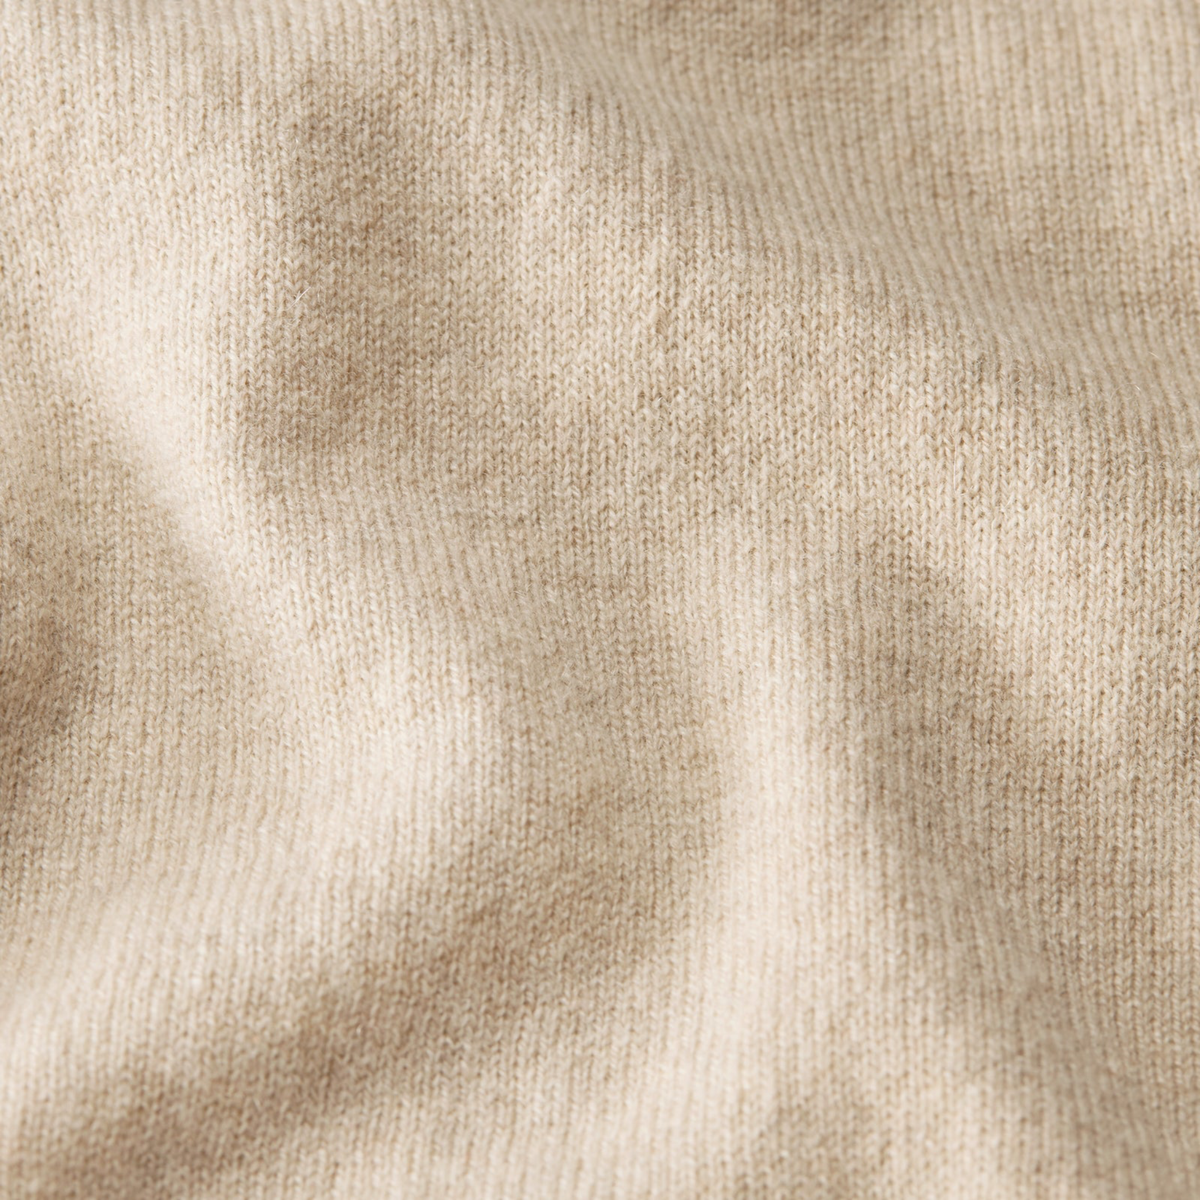 Fabric Closeup of Tan Sferra Intimita Pant